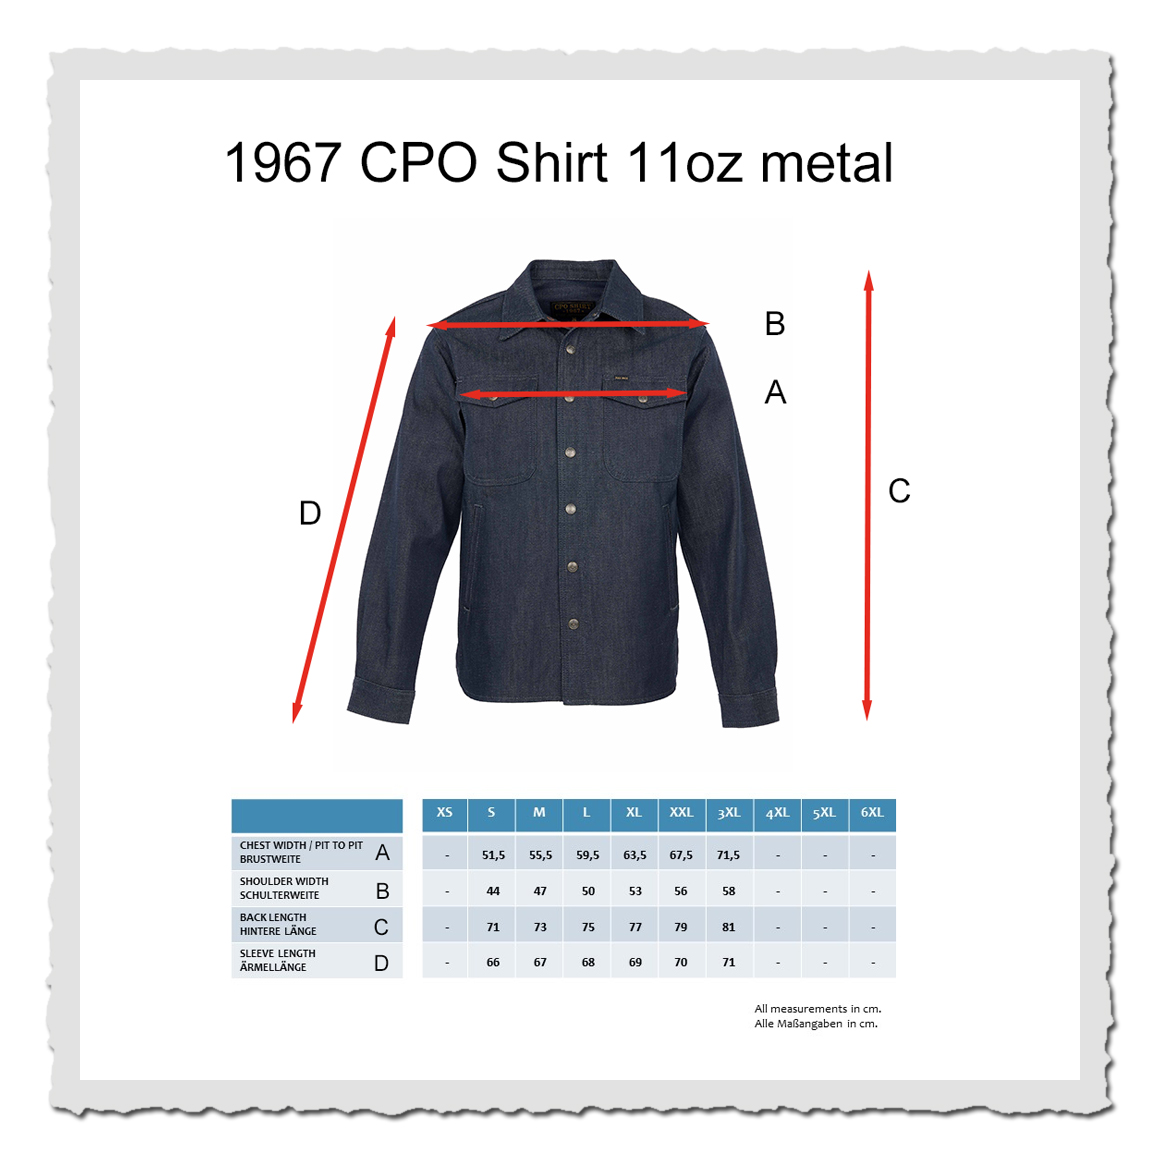 1967 CPO Shirt 11oz metal